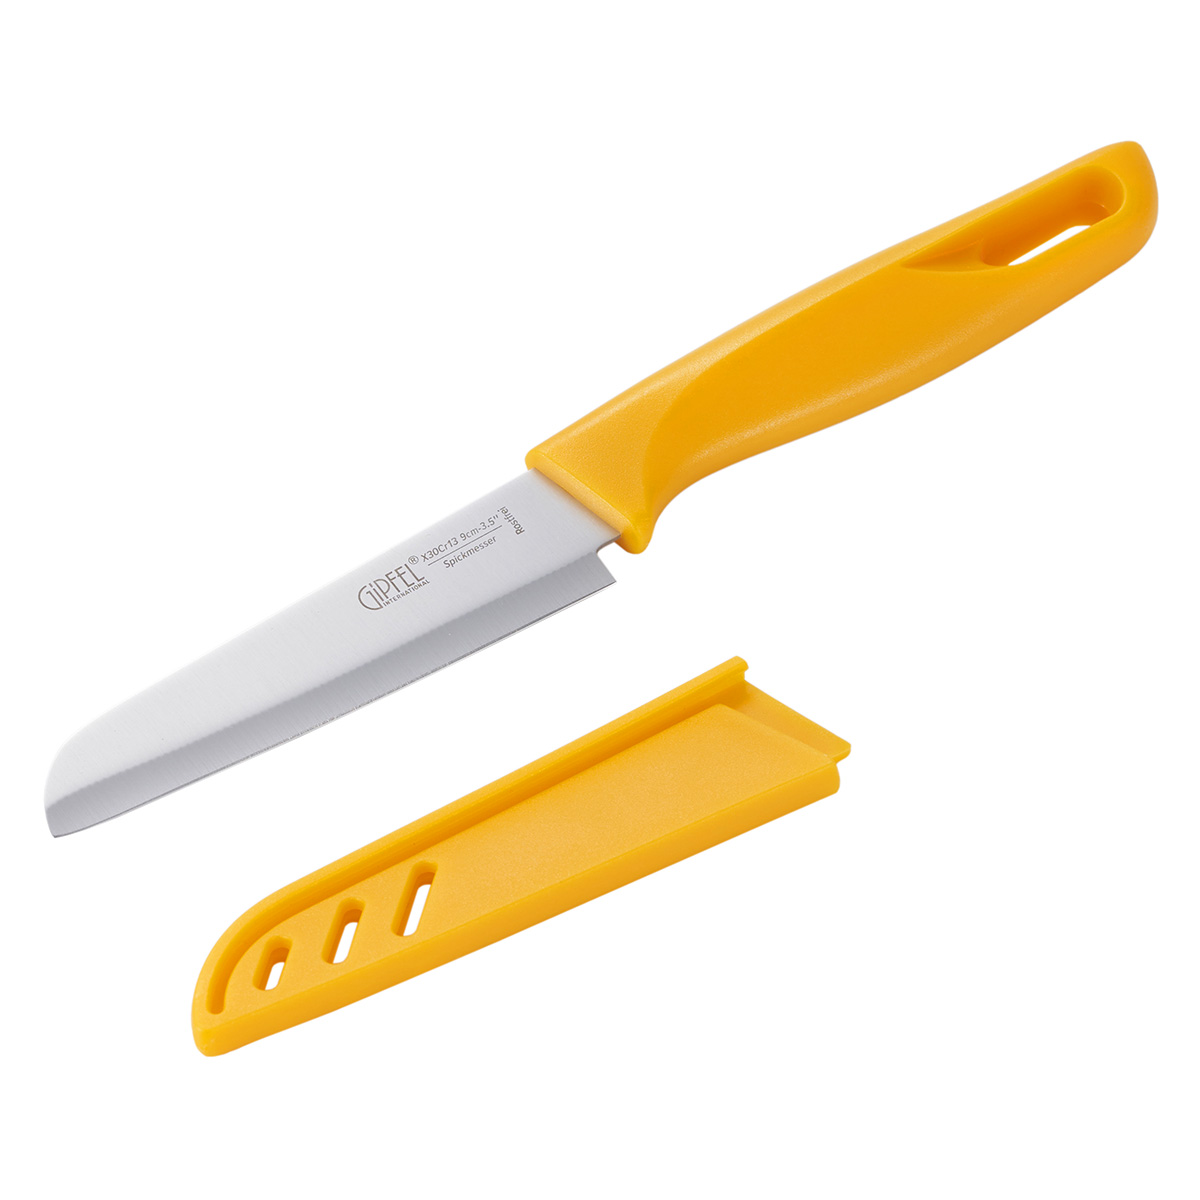 нож для чистки овощей gipfel mirella 6840 9 см Нож для чистки овощей Gipfel Sorti 52035 9 см